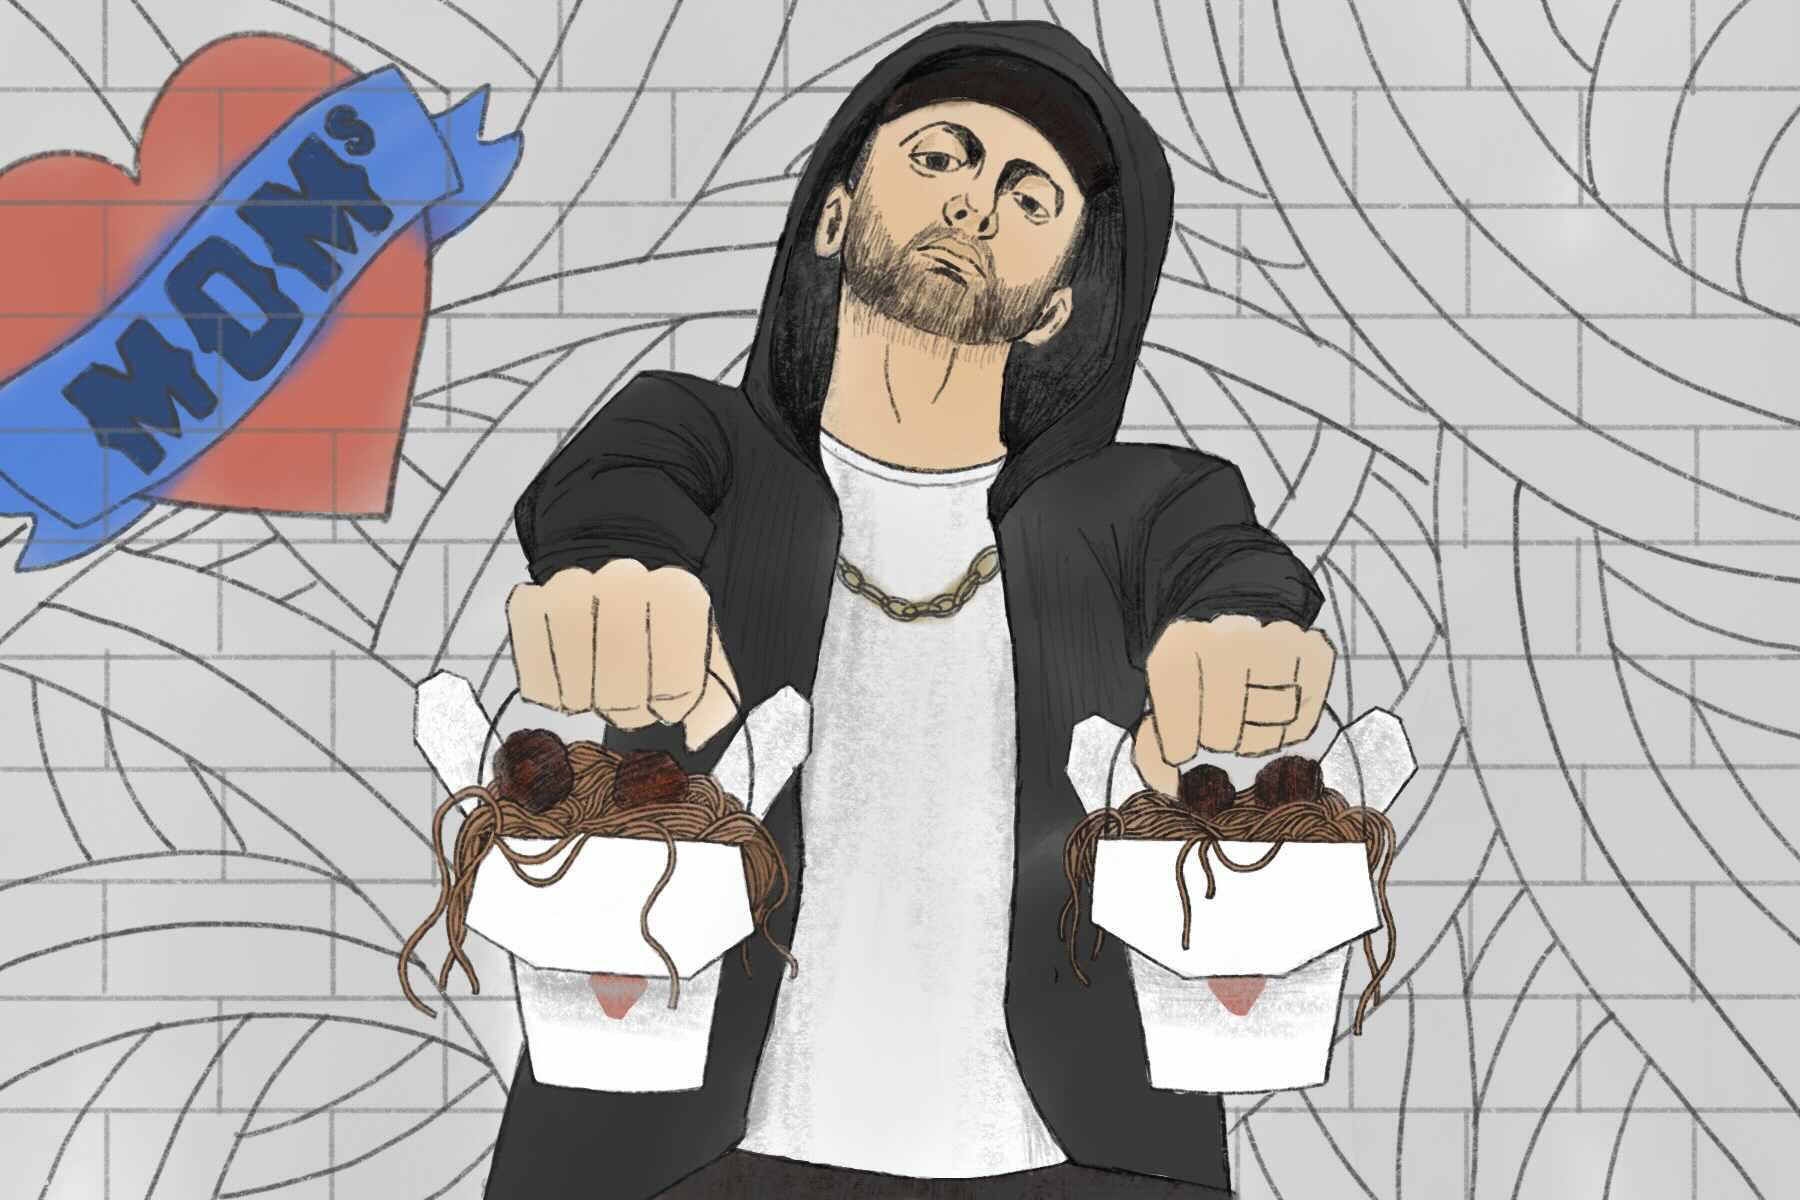 An illustration of Eminem holding spaghetti for his new Detroit restaurant called Mom's Spaghetti.